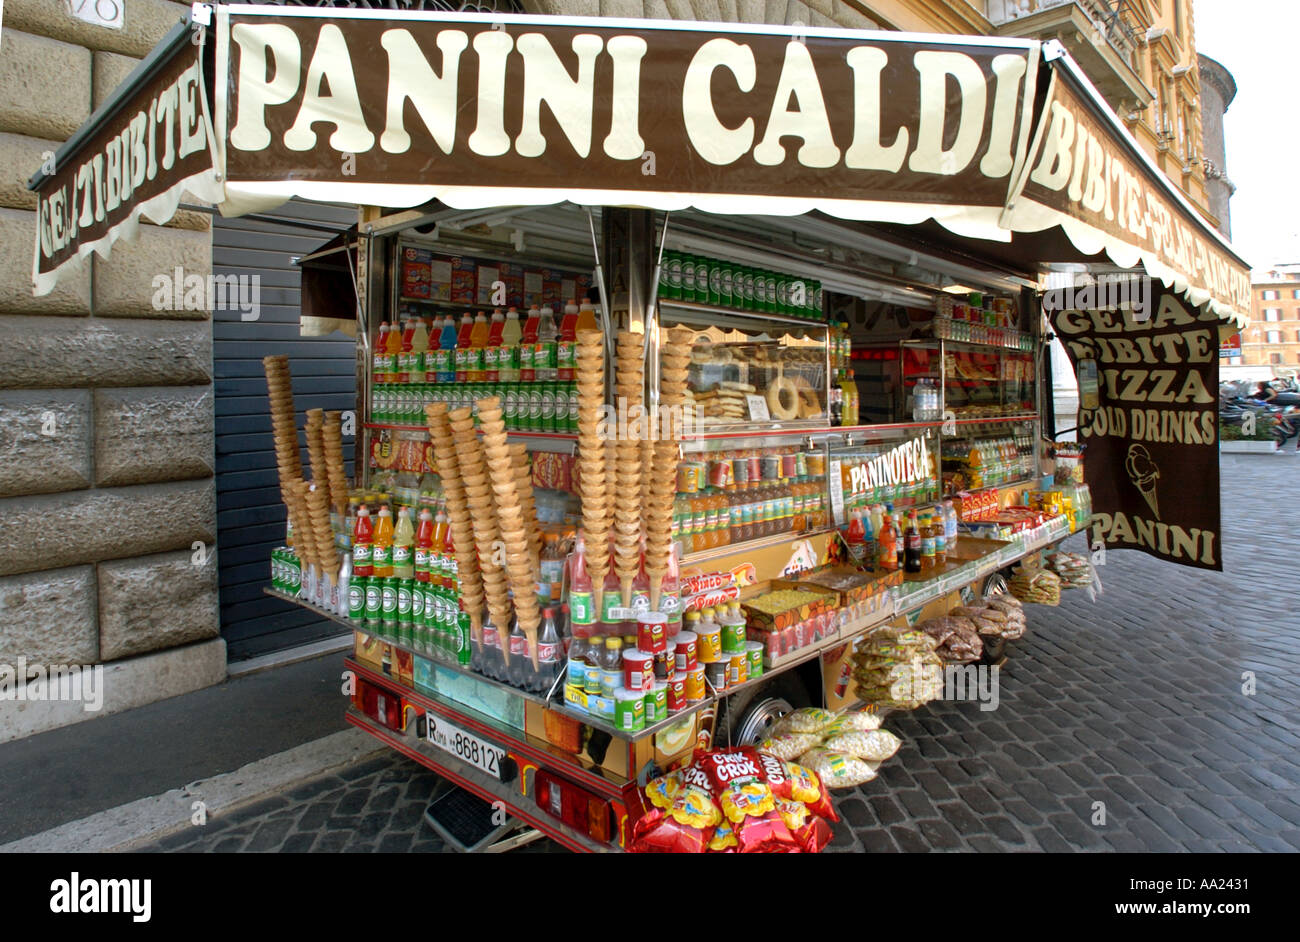 Vente d'étal de panini chaud près de la Piazza Navona, Rome, Italie Banque D'Images